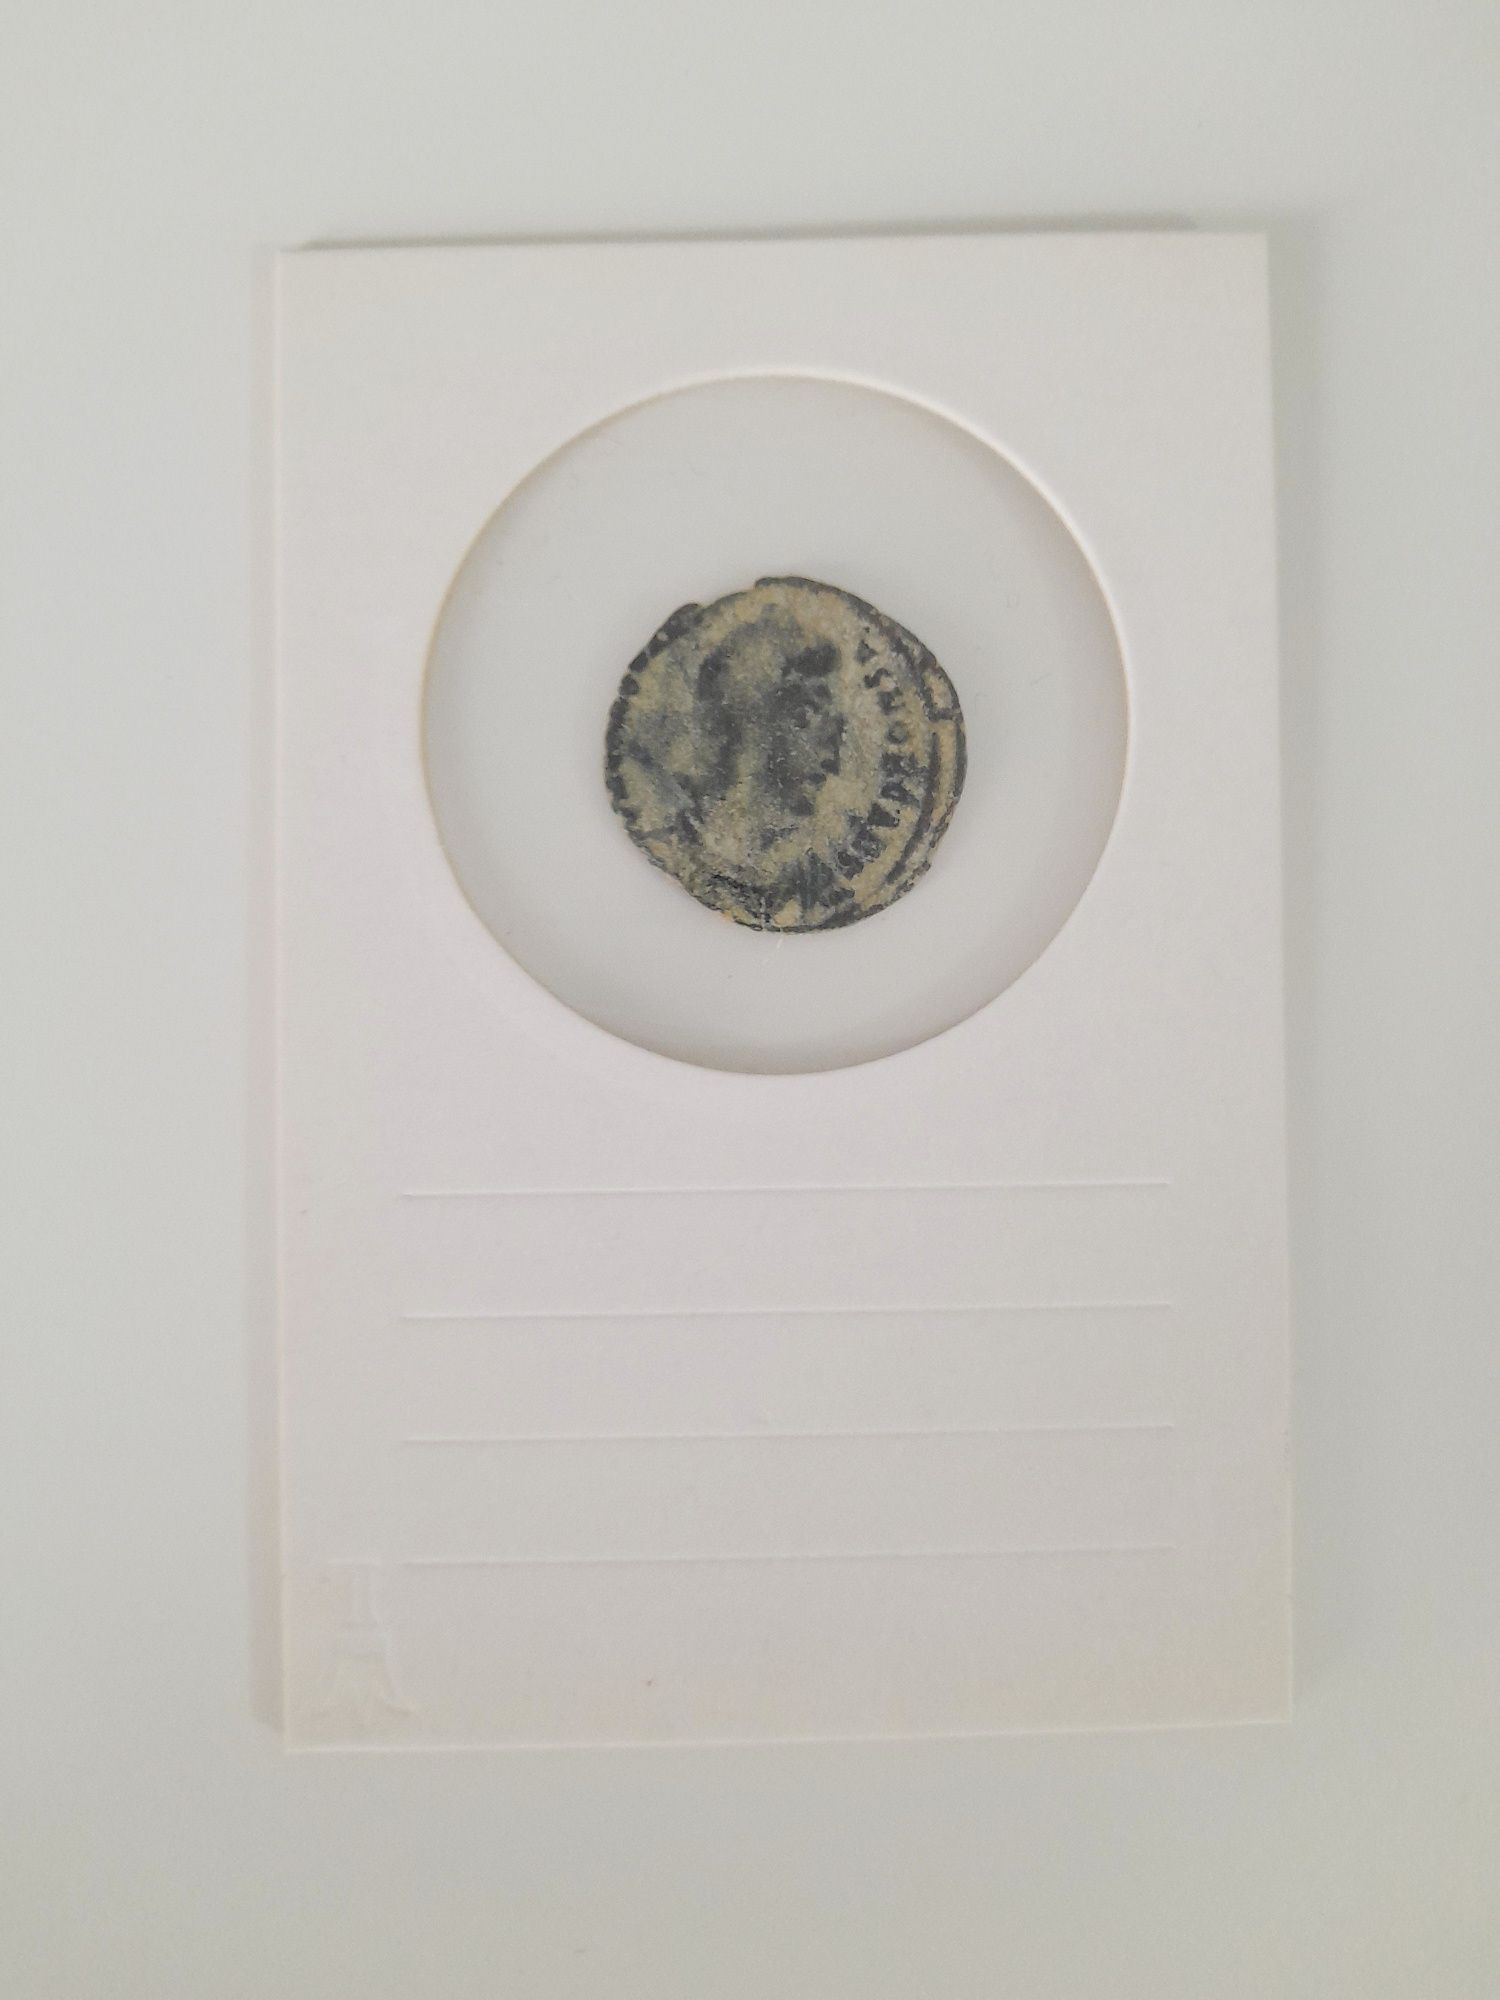 Monedă romană antică din bronz. Din anii 180-380 după Hristos.